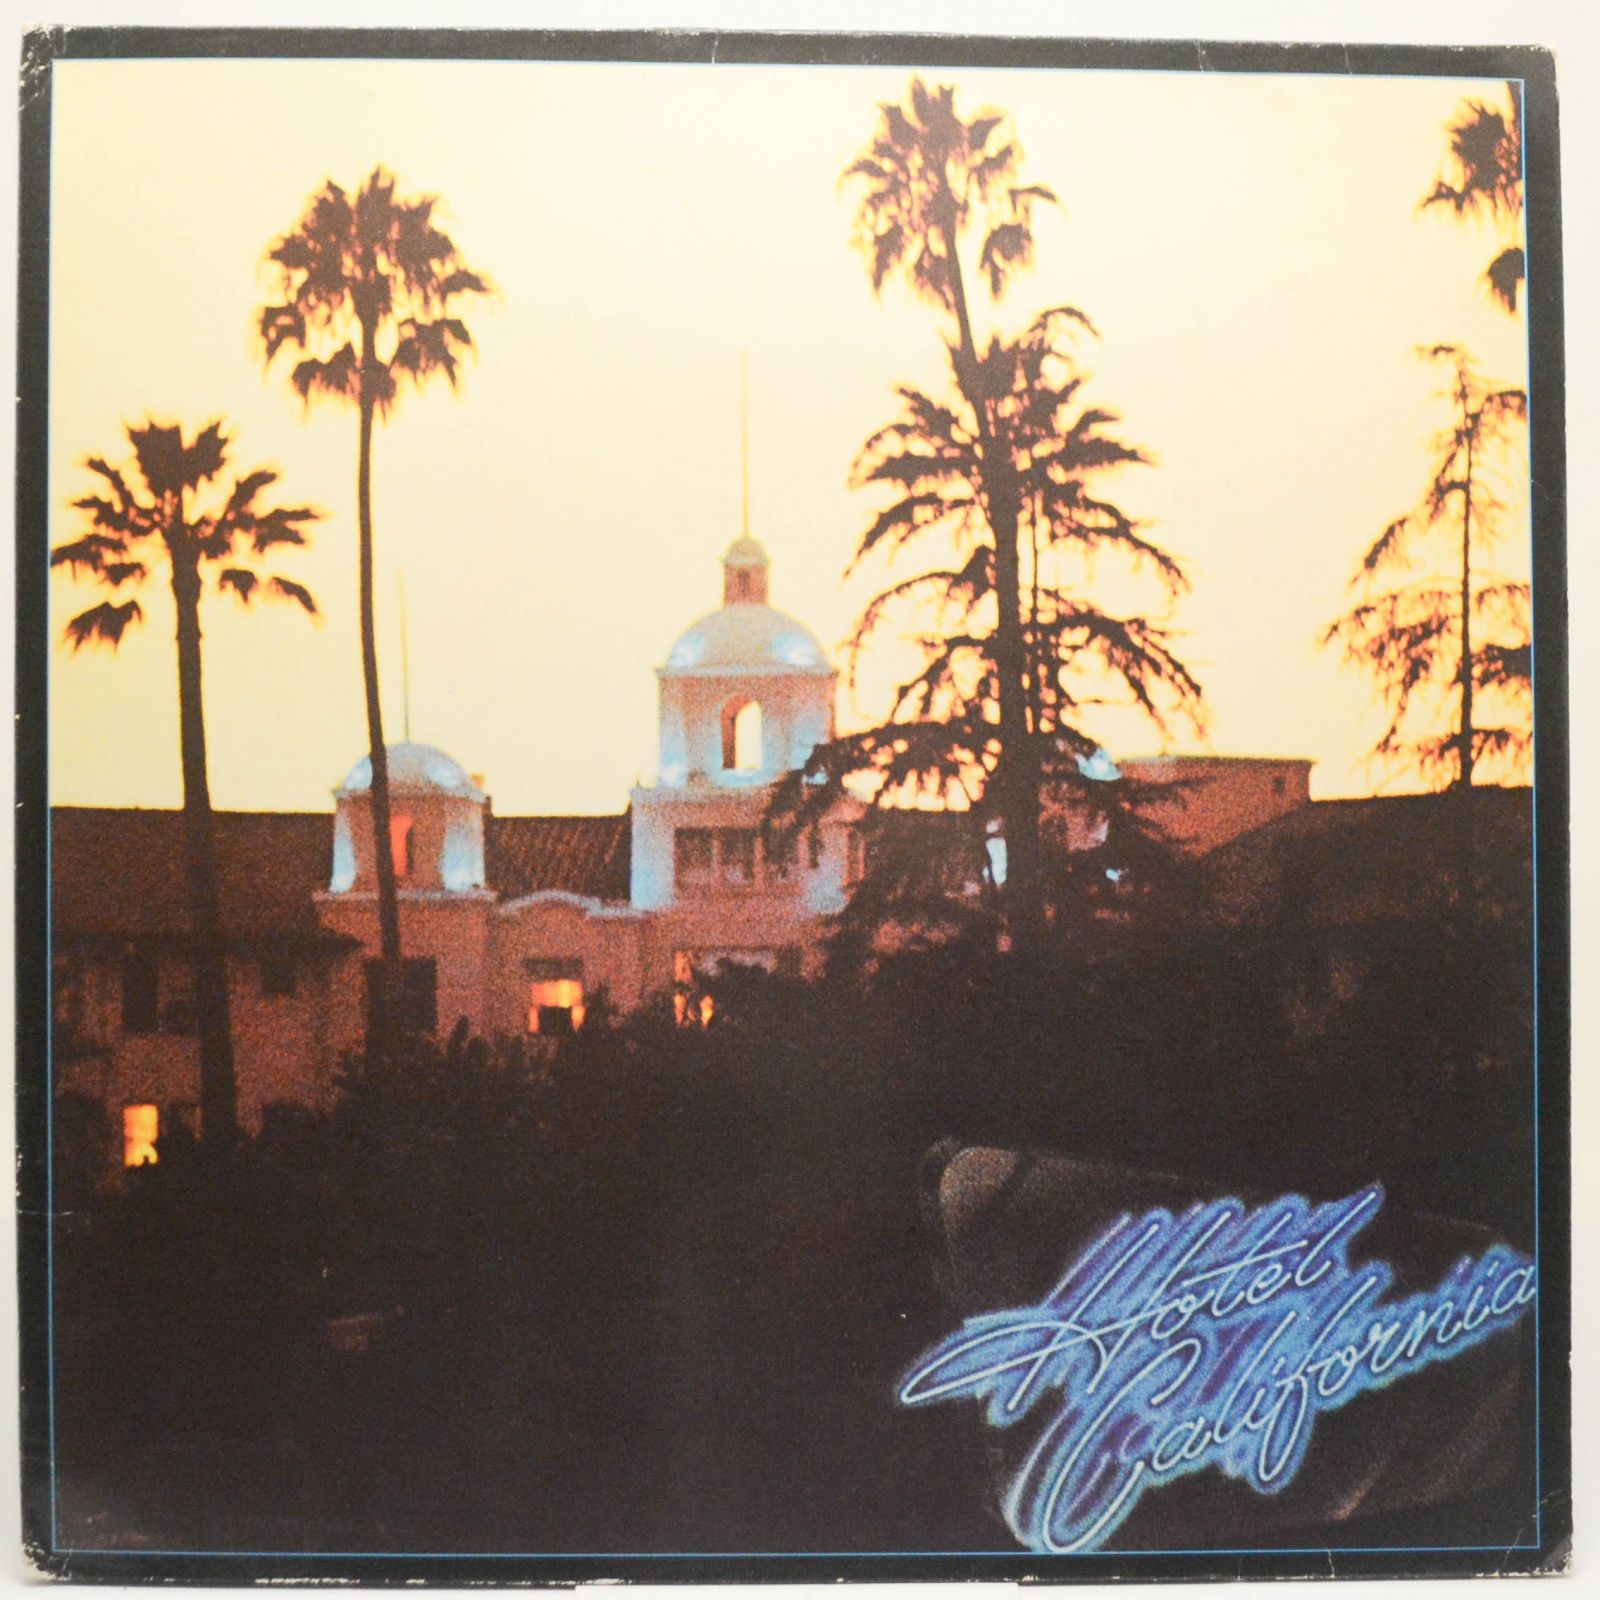 Eagles — Hotel California, 1980